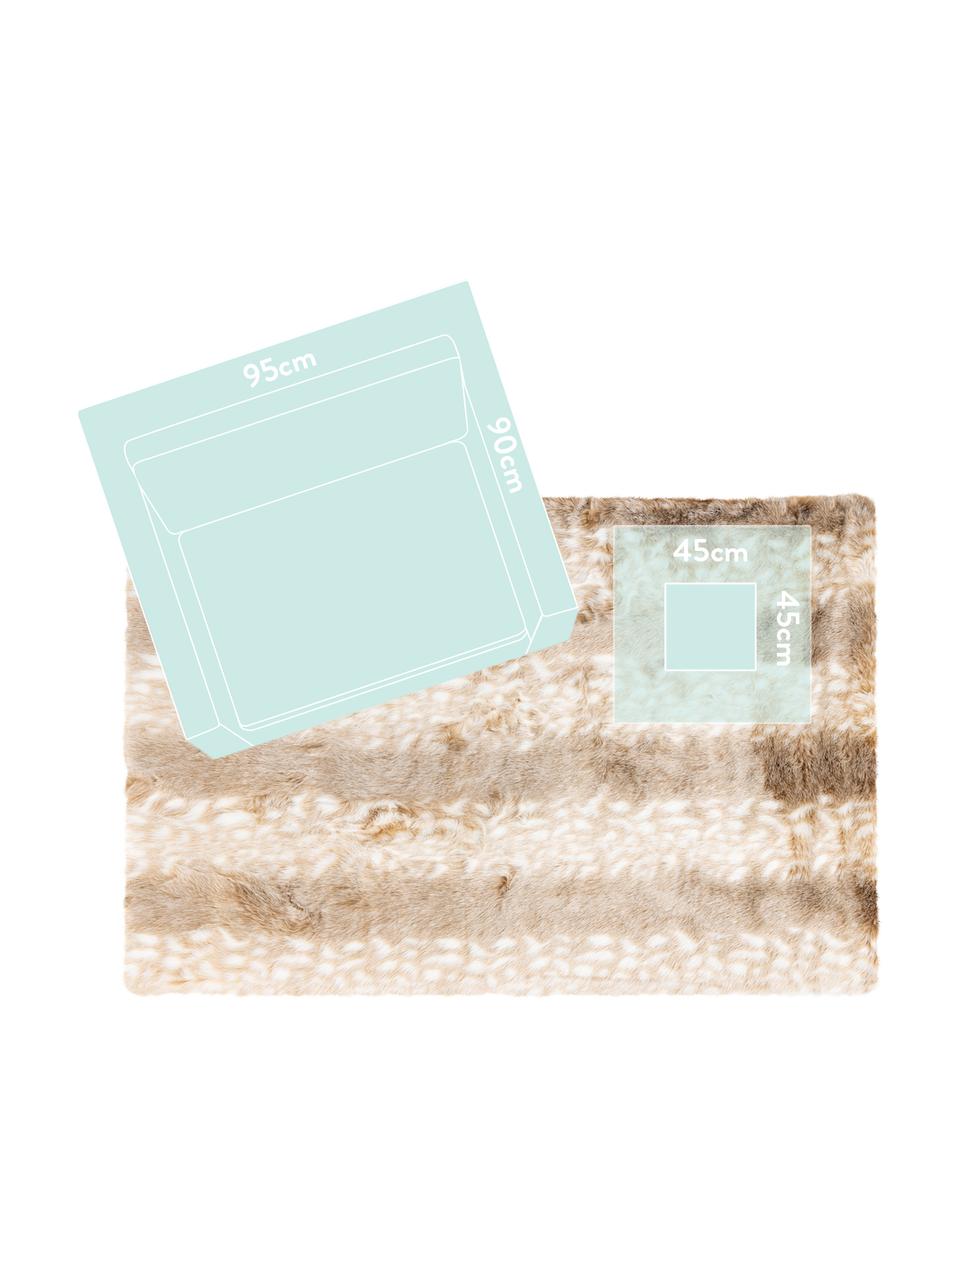 Načechraný koberec s vysokým vlasem Rumba, Béžová, krémově bílá